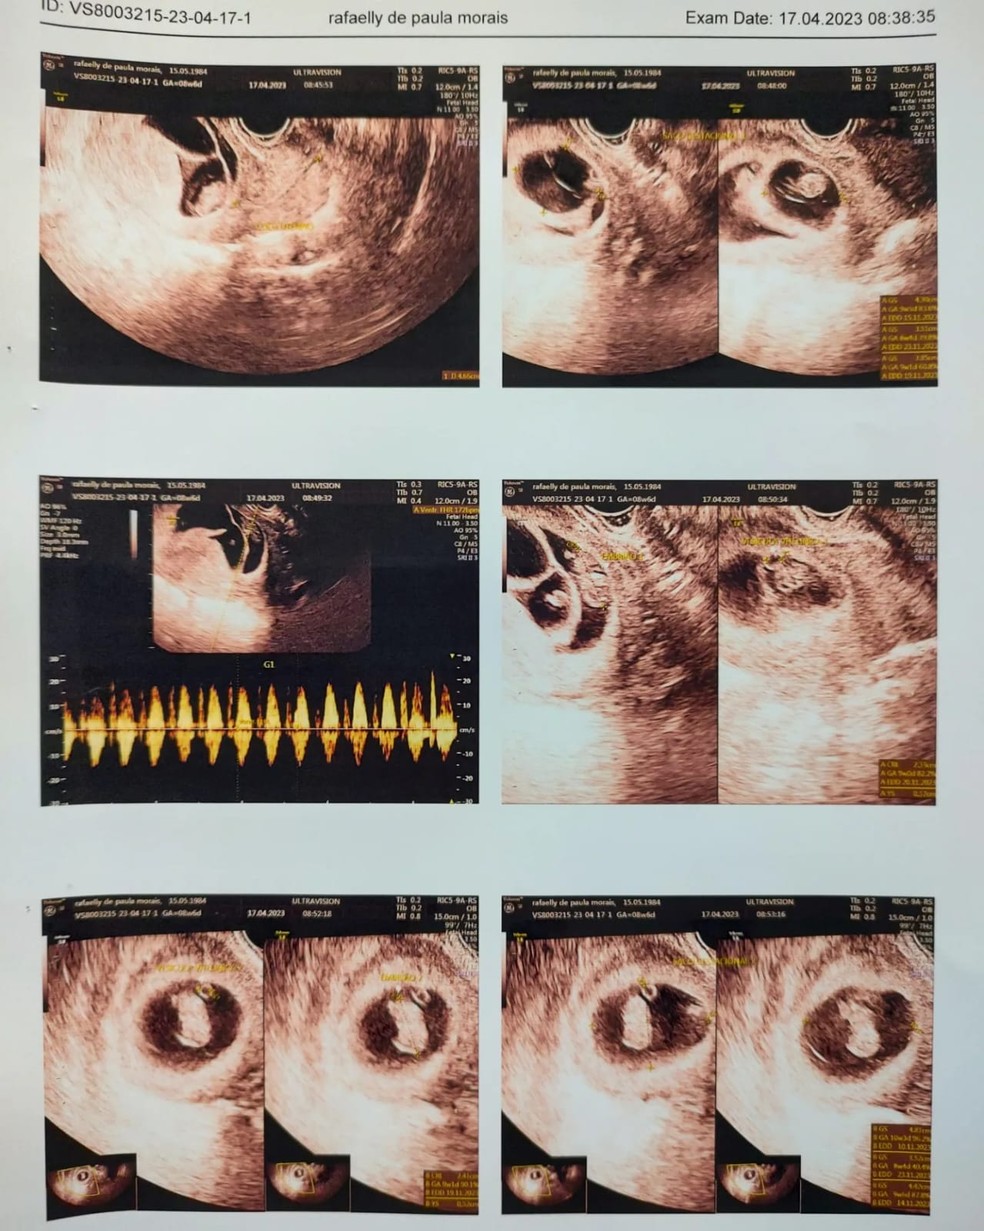 Laudo do especialista em medicina fetal mostra cinco bebês  — Foto: Arquivo pessoal